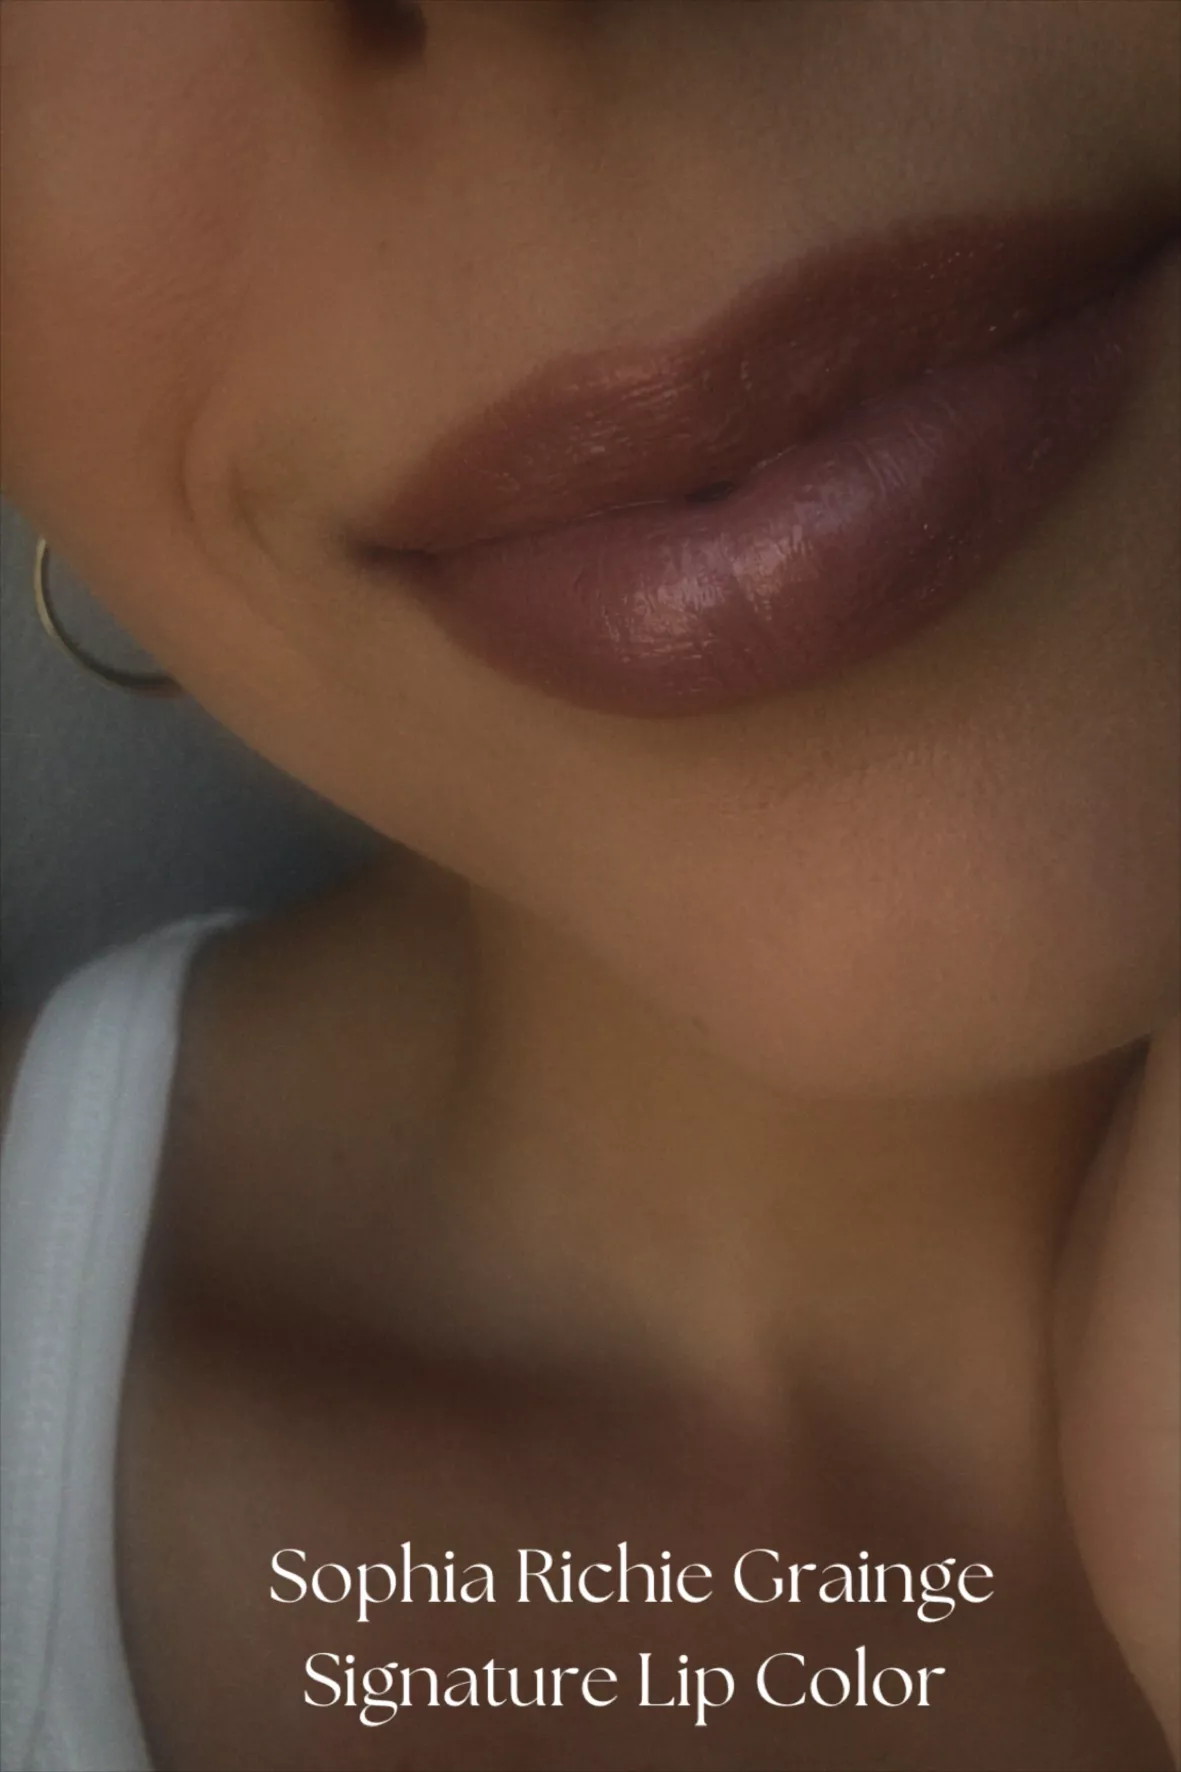 Chanel Rouge Coco Flash Lipstick - 70 Attitude Lipstick Women 0.1 oz